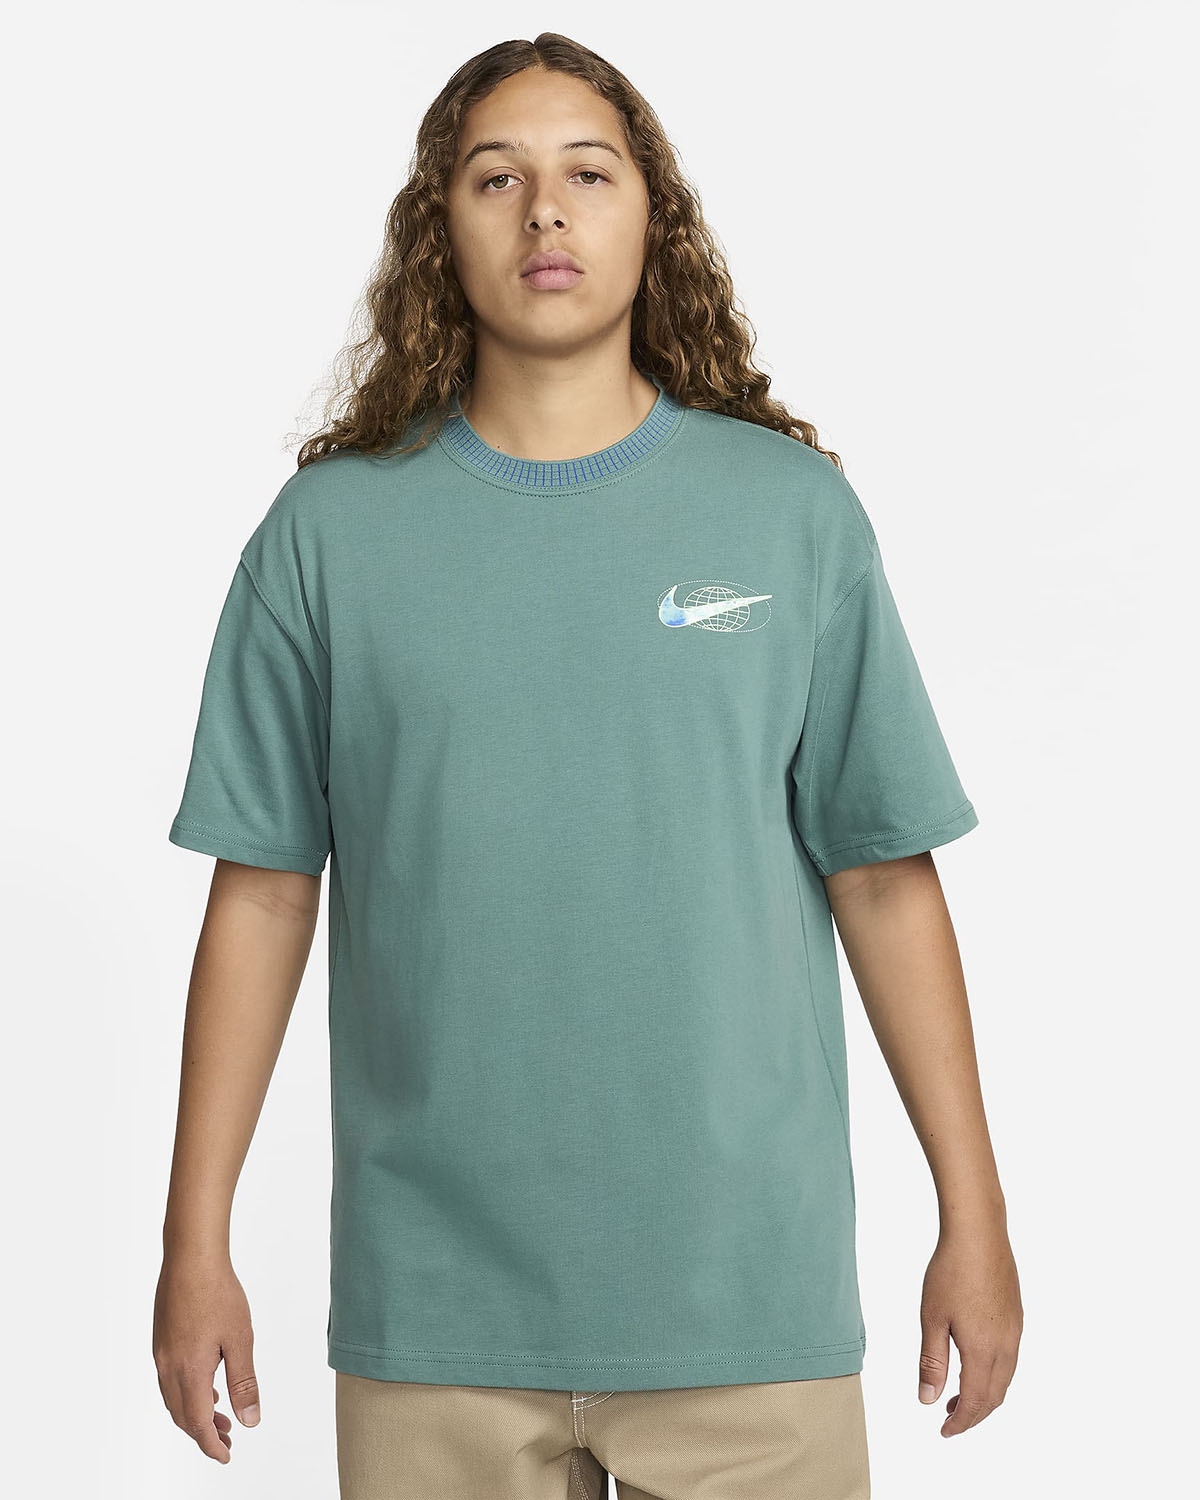 Nike Sportswear Max90 T Shirt Bicoastal